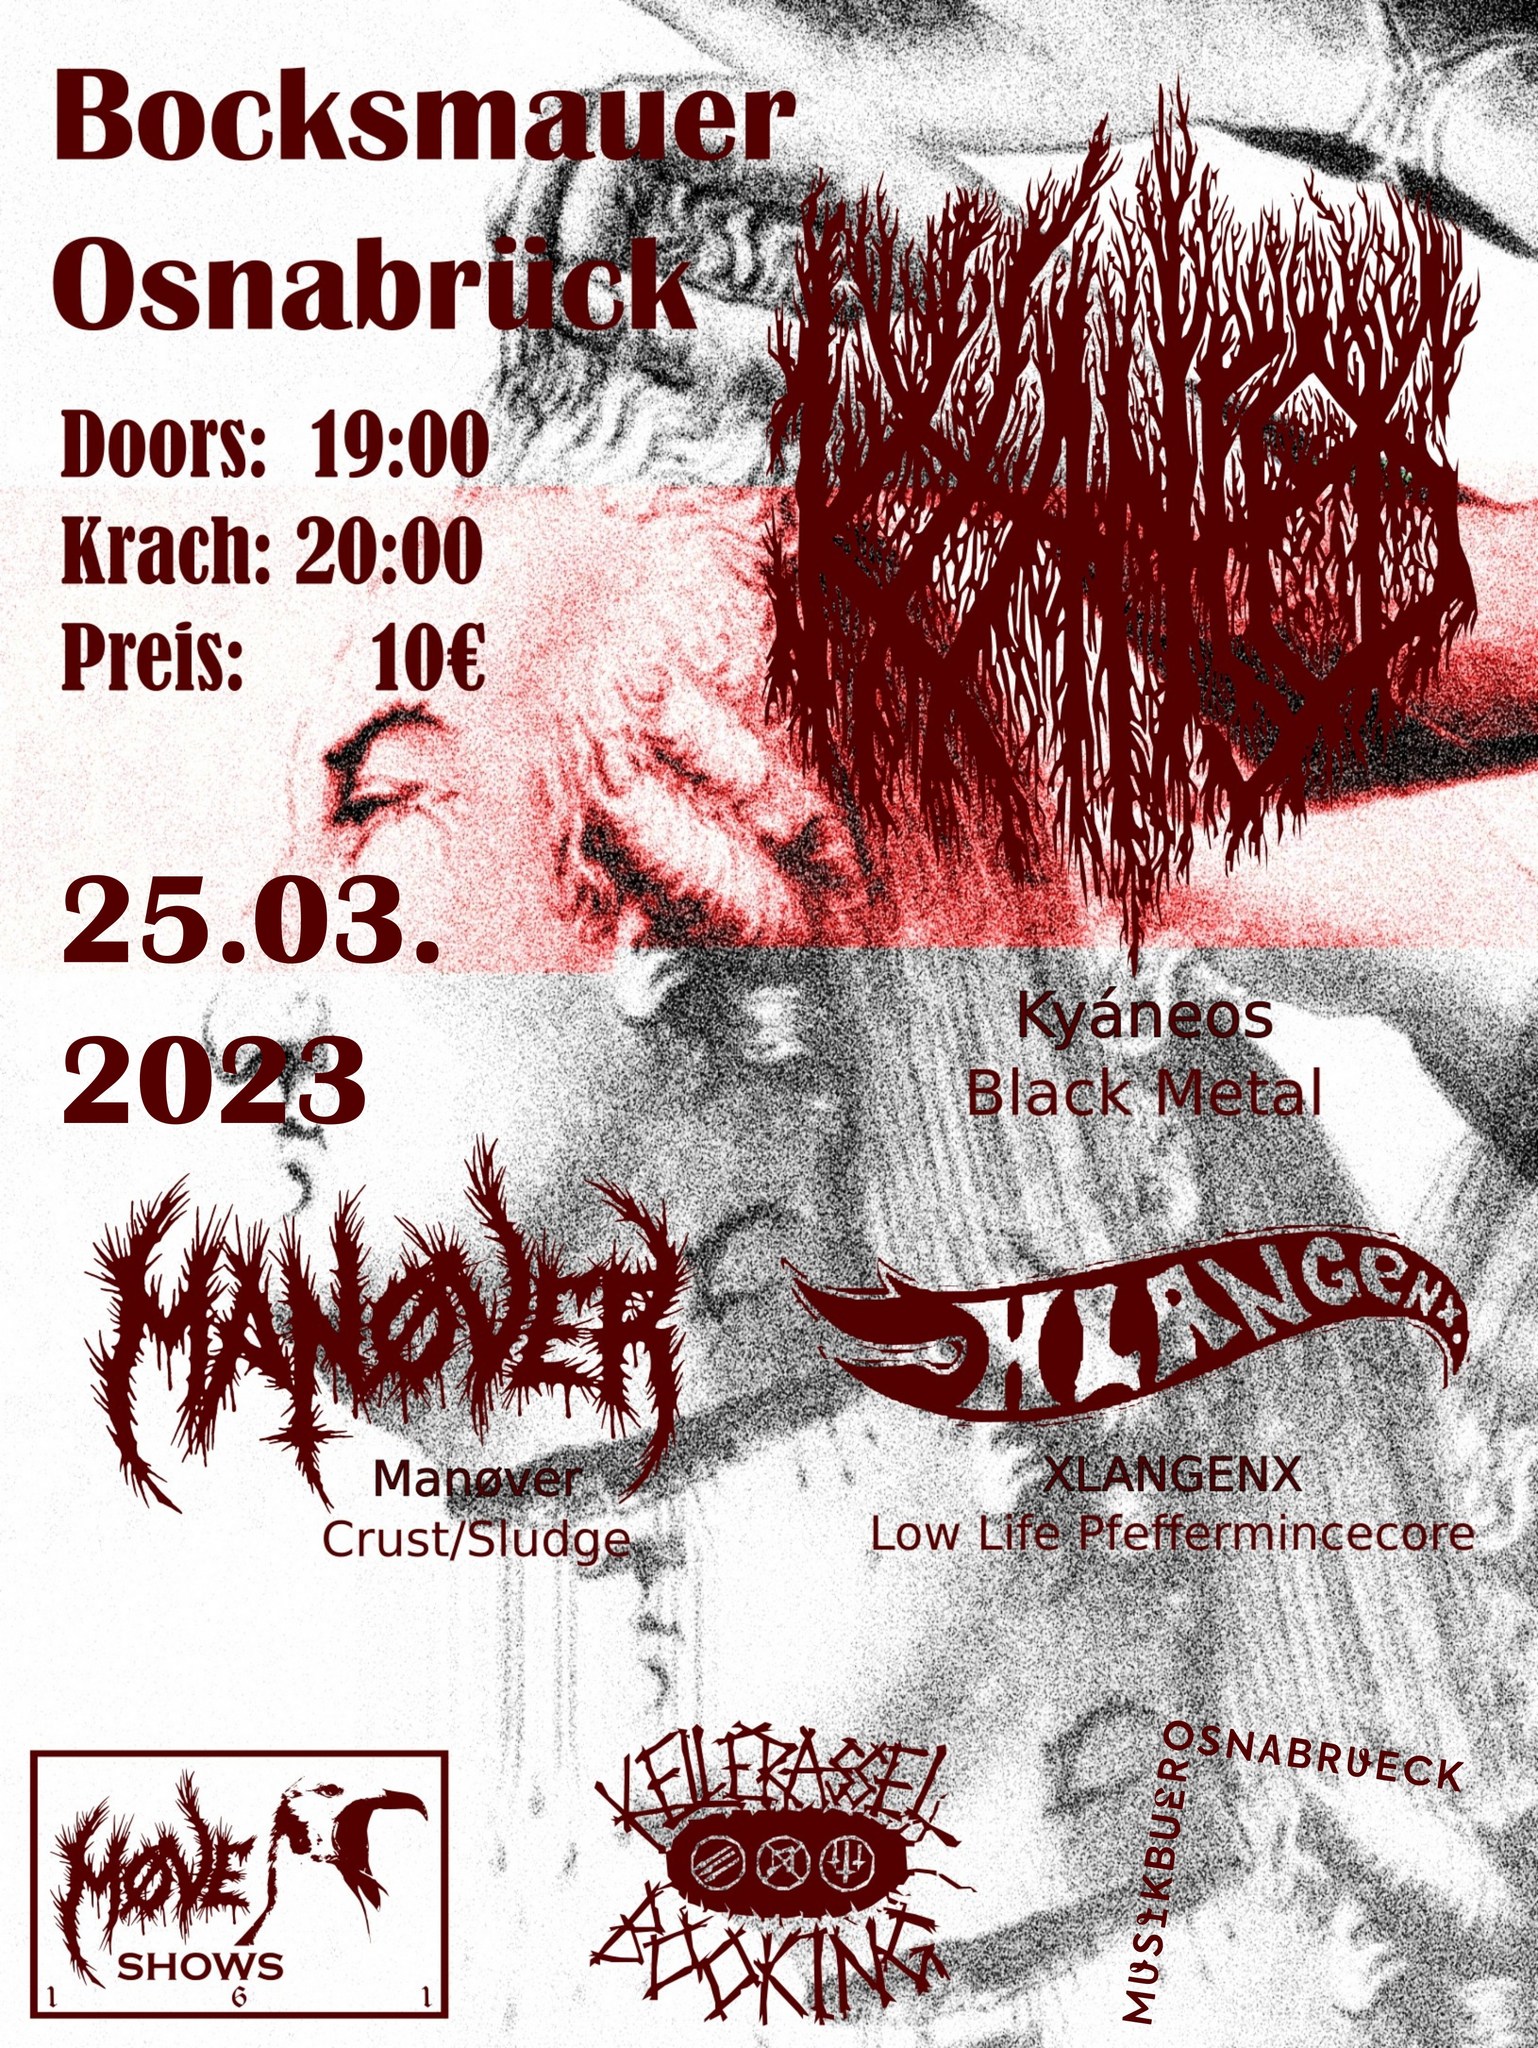 Plakat von The Bocksmauer: Manöver, Kyaeos, xLangenx in der Bocksmauer Osnabrück am 25.03.2023